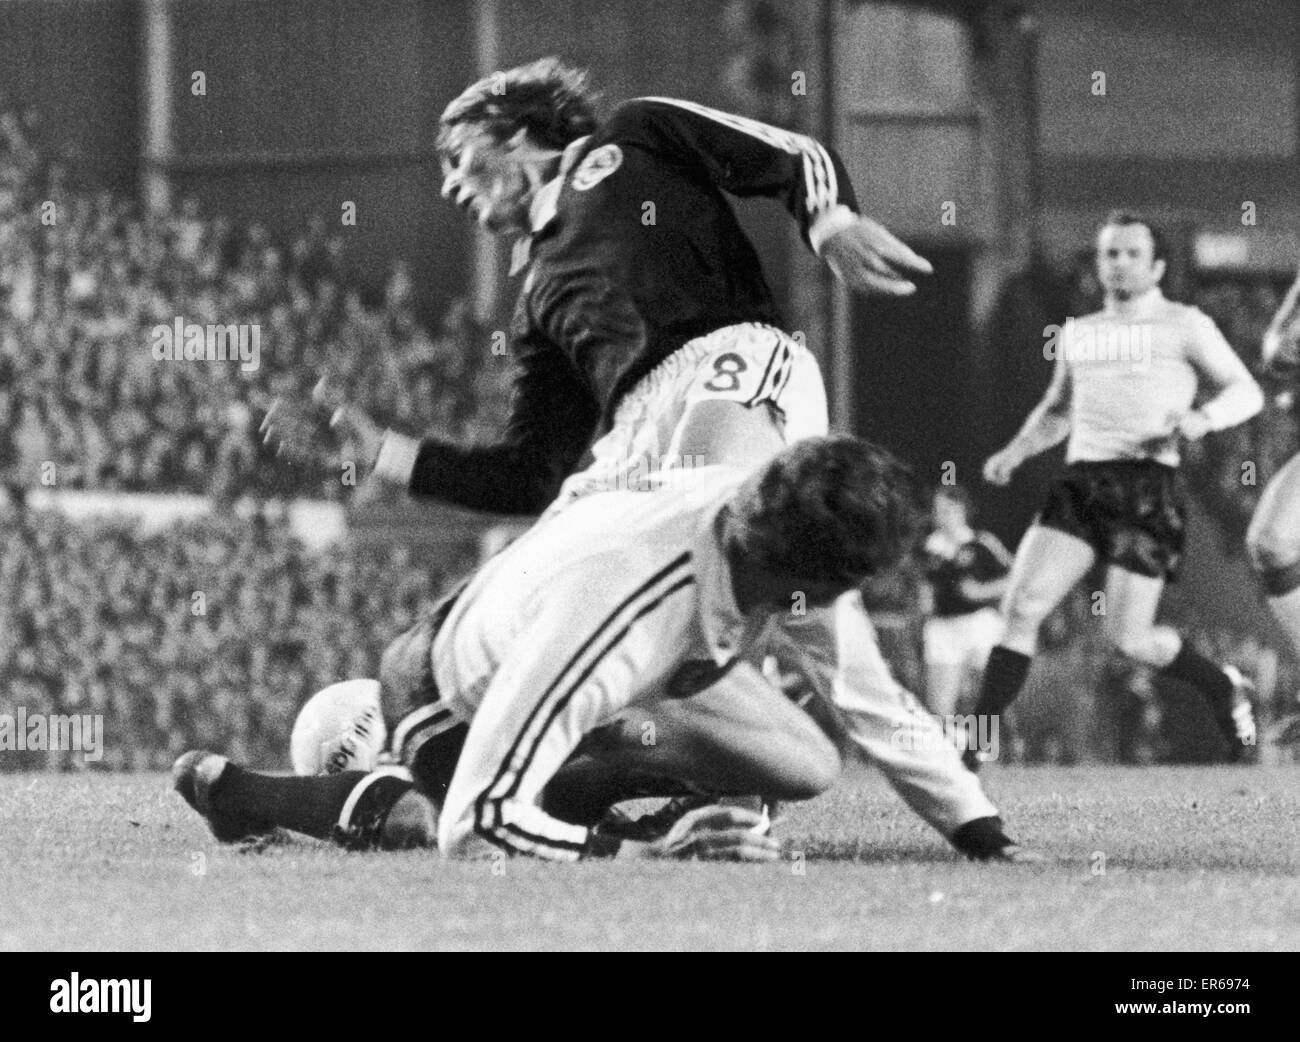 L'Écosse jusqu'à la finale de la Coupe du monde. L'équipe de football Ecosse avancé pour la finale de la Coupe du Monde en Argentine en 1978, après une belle victoire 2-0 sur Le Pays de Galle, à Anfield. Mais le vicotry a été marquée par la violence des fans sur les terrasses- 100 personnes ont été arres Banque D'Images